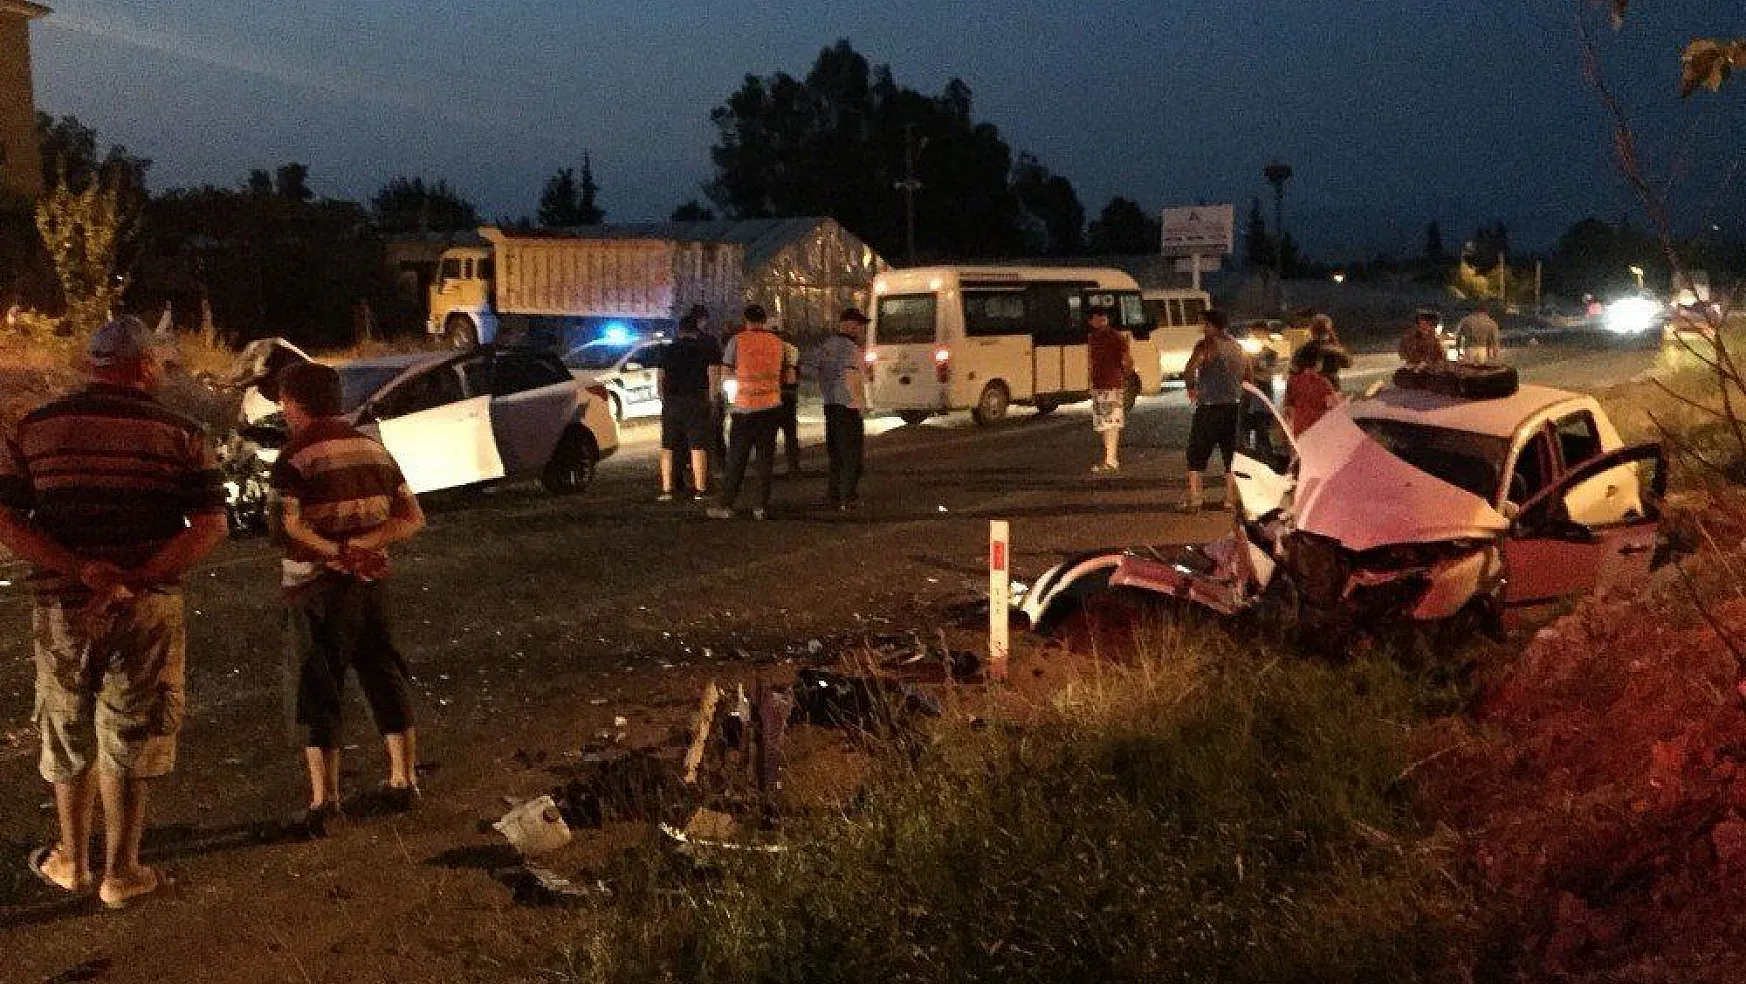 Seydikemer'de trafik kazası: 1 ölü